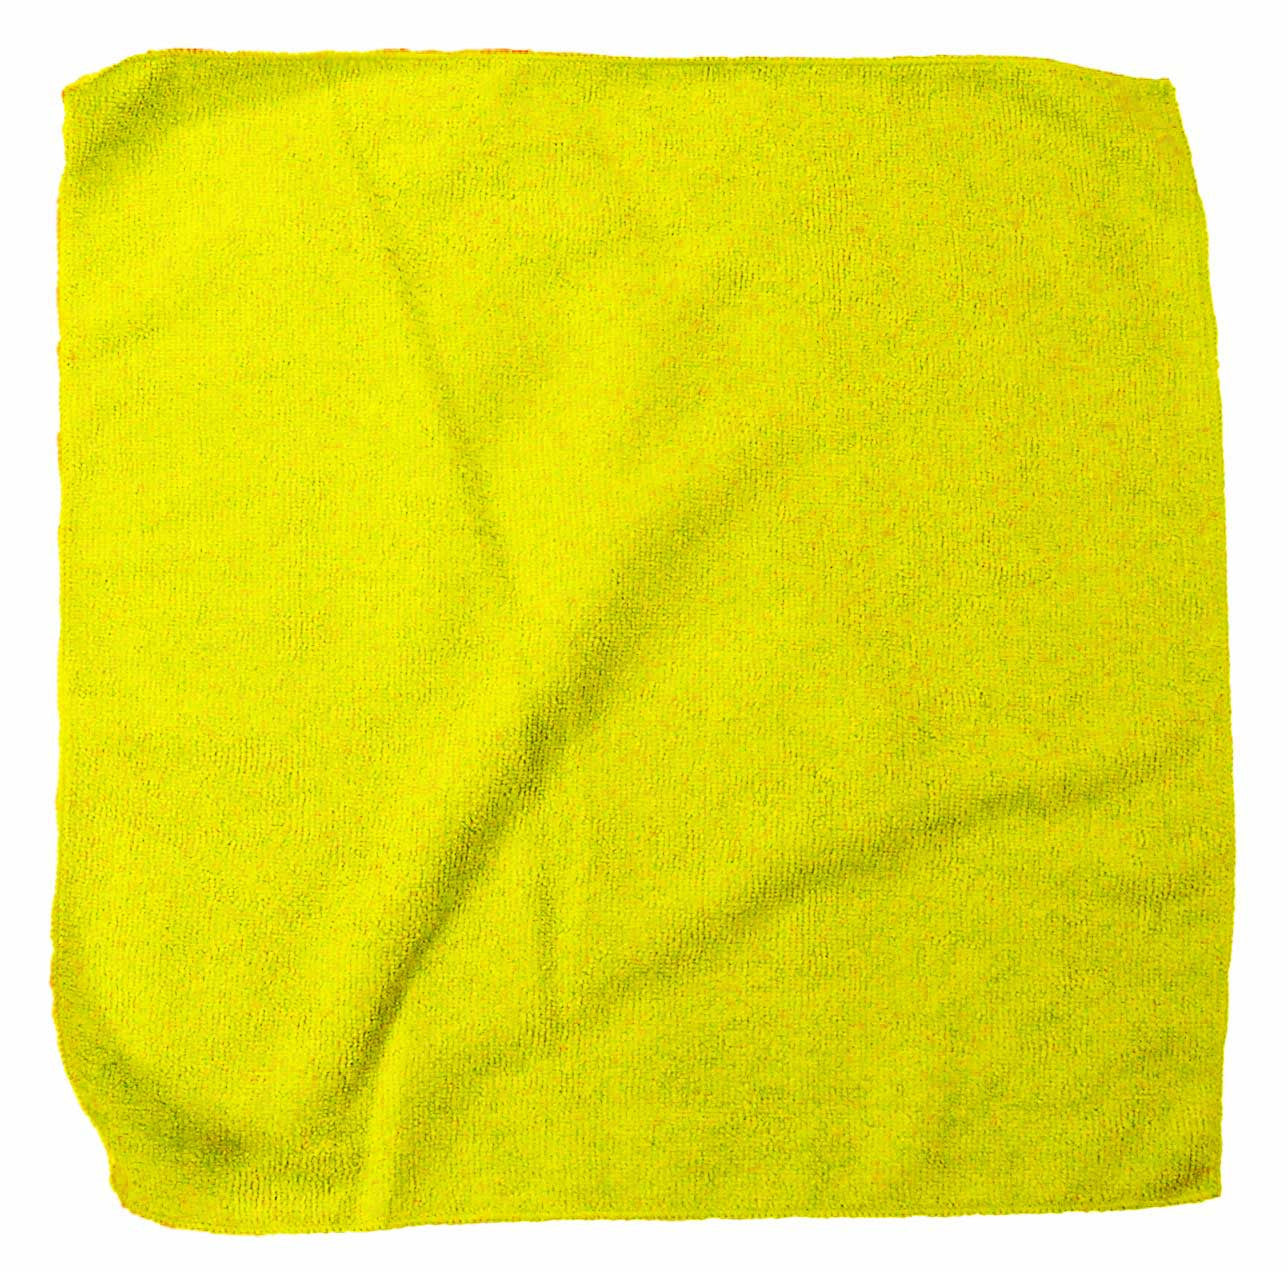 microfiber towel